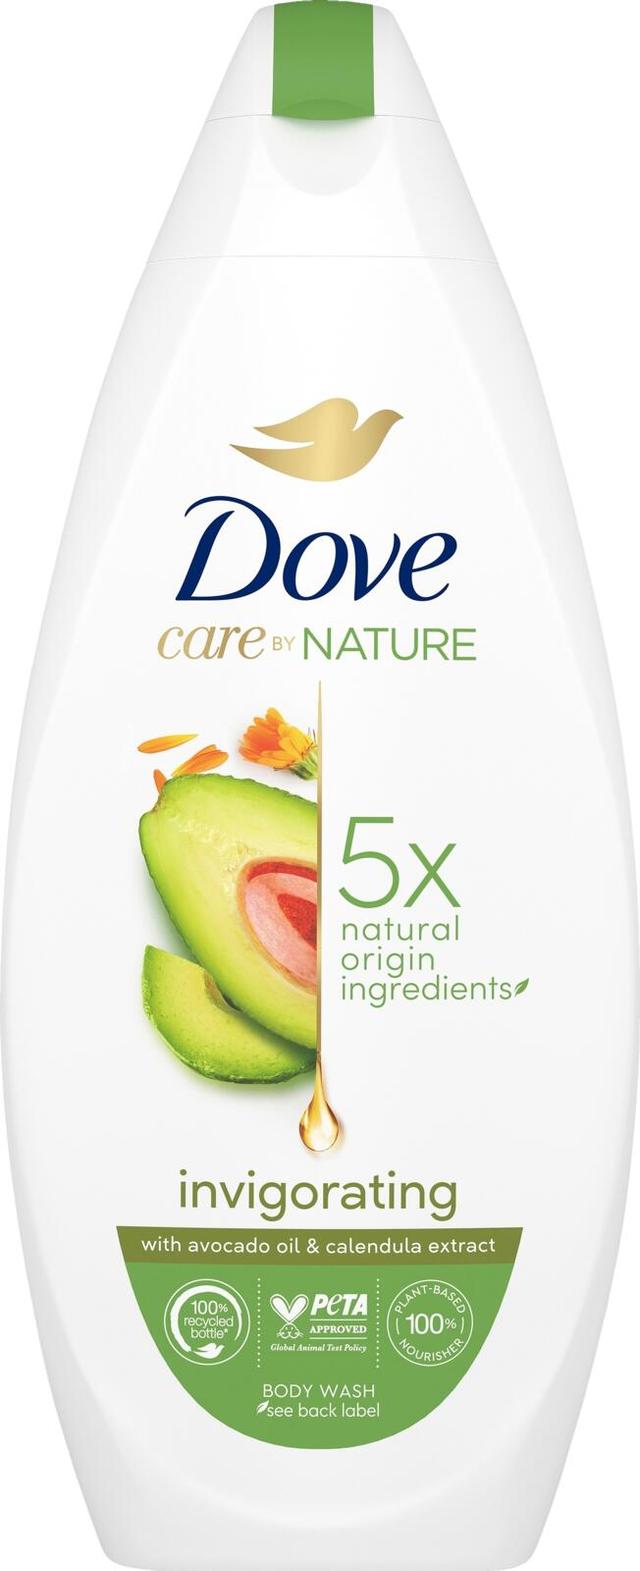 Dove Care By Nature Invigorating Ritual Suihkusaippua hellä iholle pehmentää ihoa välittömästi ja ravitsee pitkäkestoisesti 225 ml